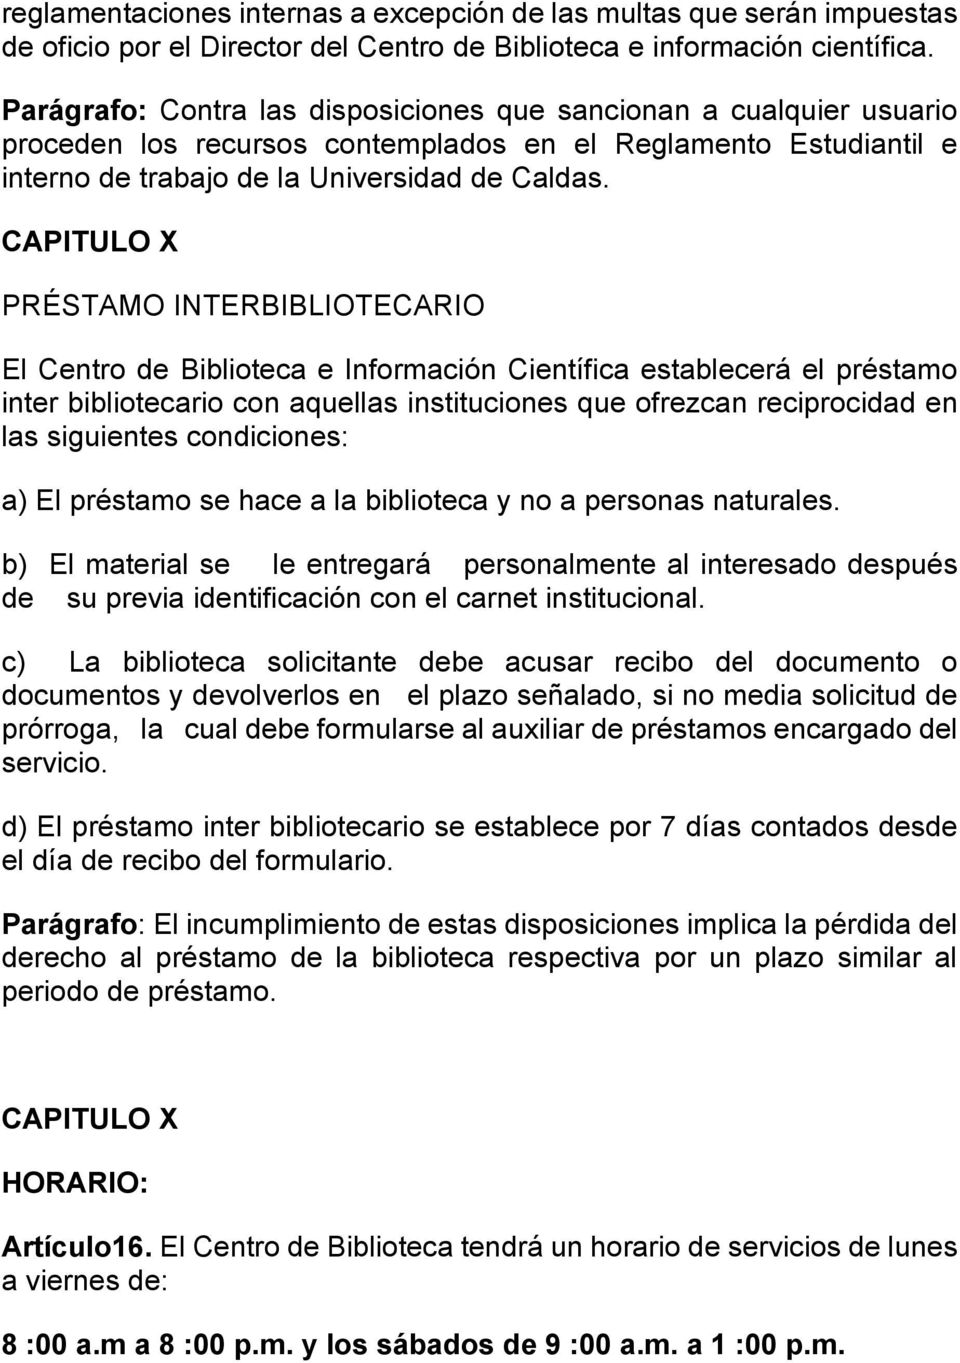 CAPITULO X PRÉSTAMO INTERBIBLIOTECARIO El Centro de Biblioteca e Información Científica establecerá el préstamo inter bibliotecario con aquellas instituciones que ofrezcan reciprocidad en las